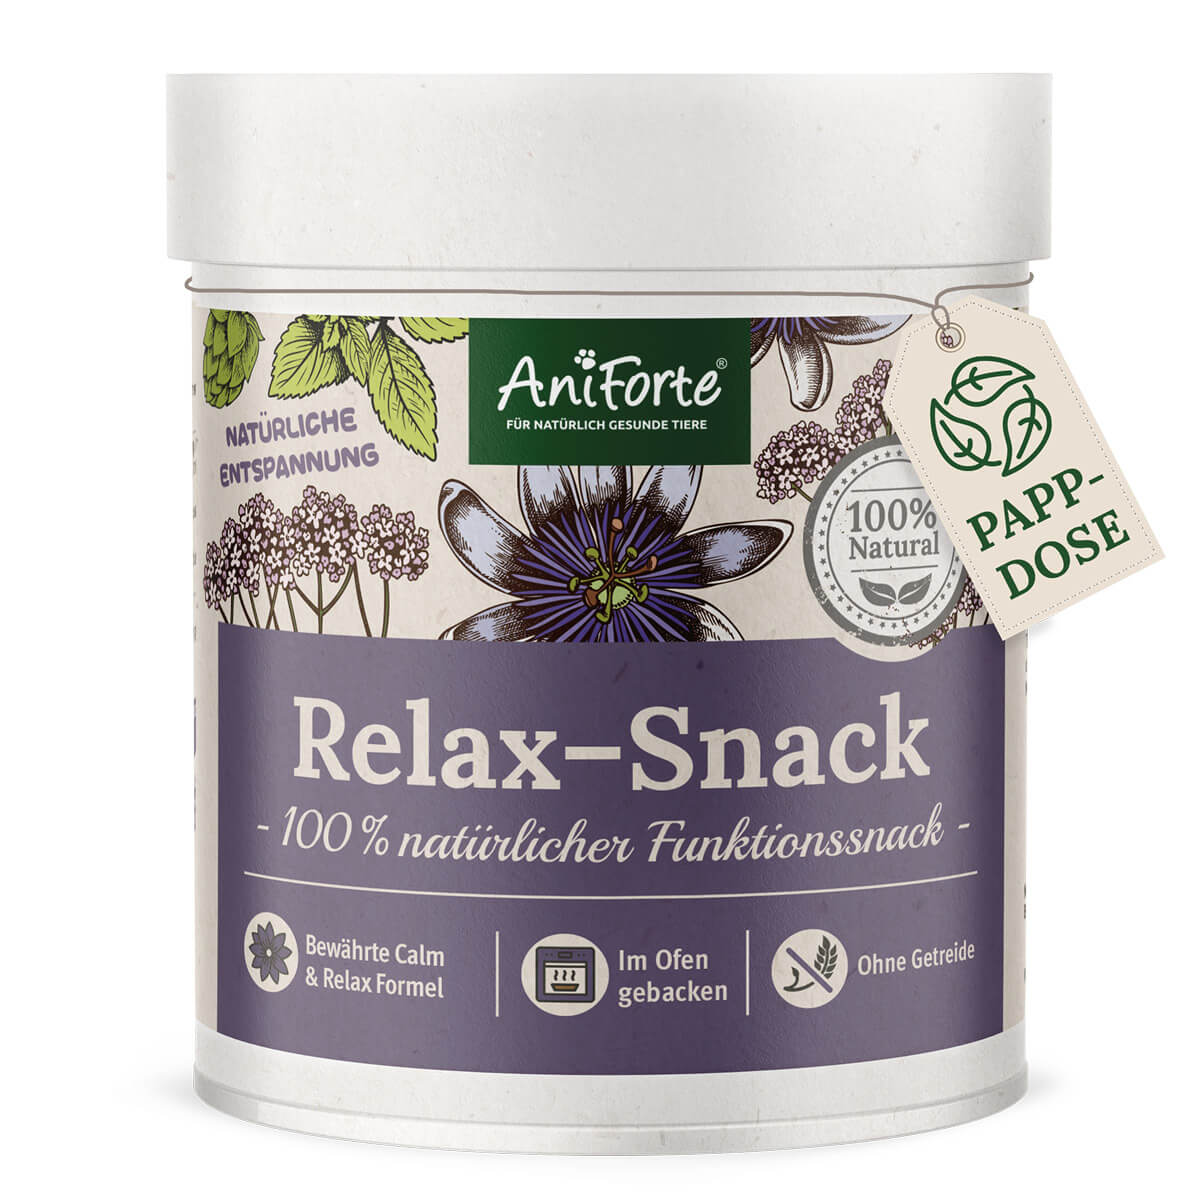 Relax-Snack für natürliche Entspannung in jegliche belastende Situationen für Hunde- AniForte